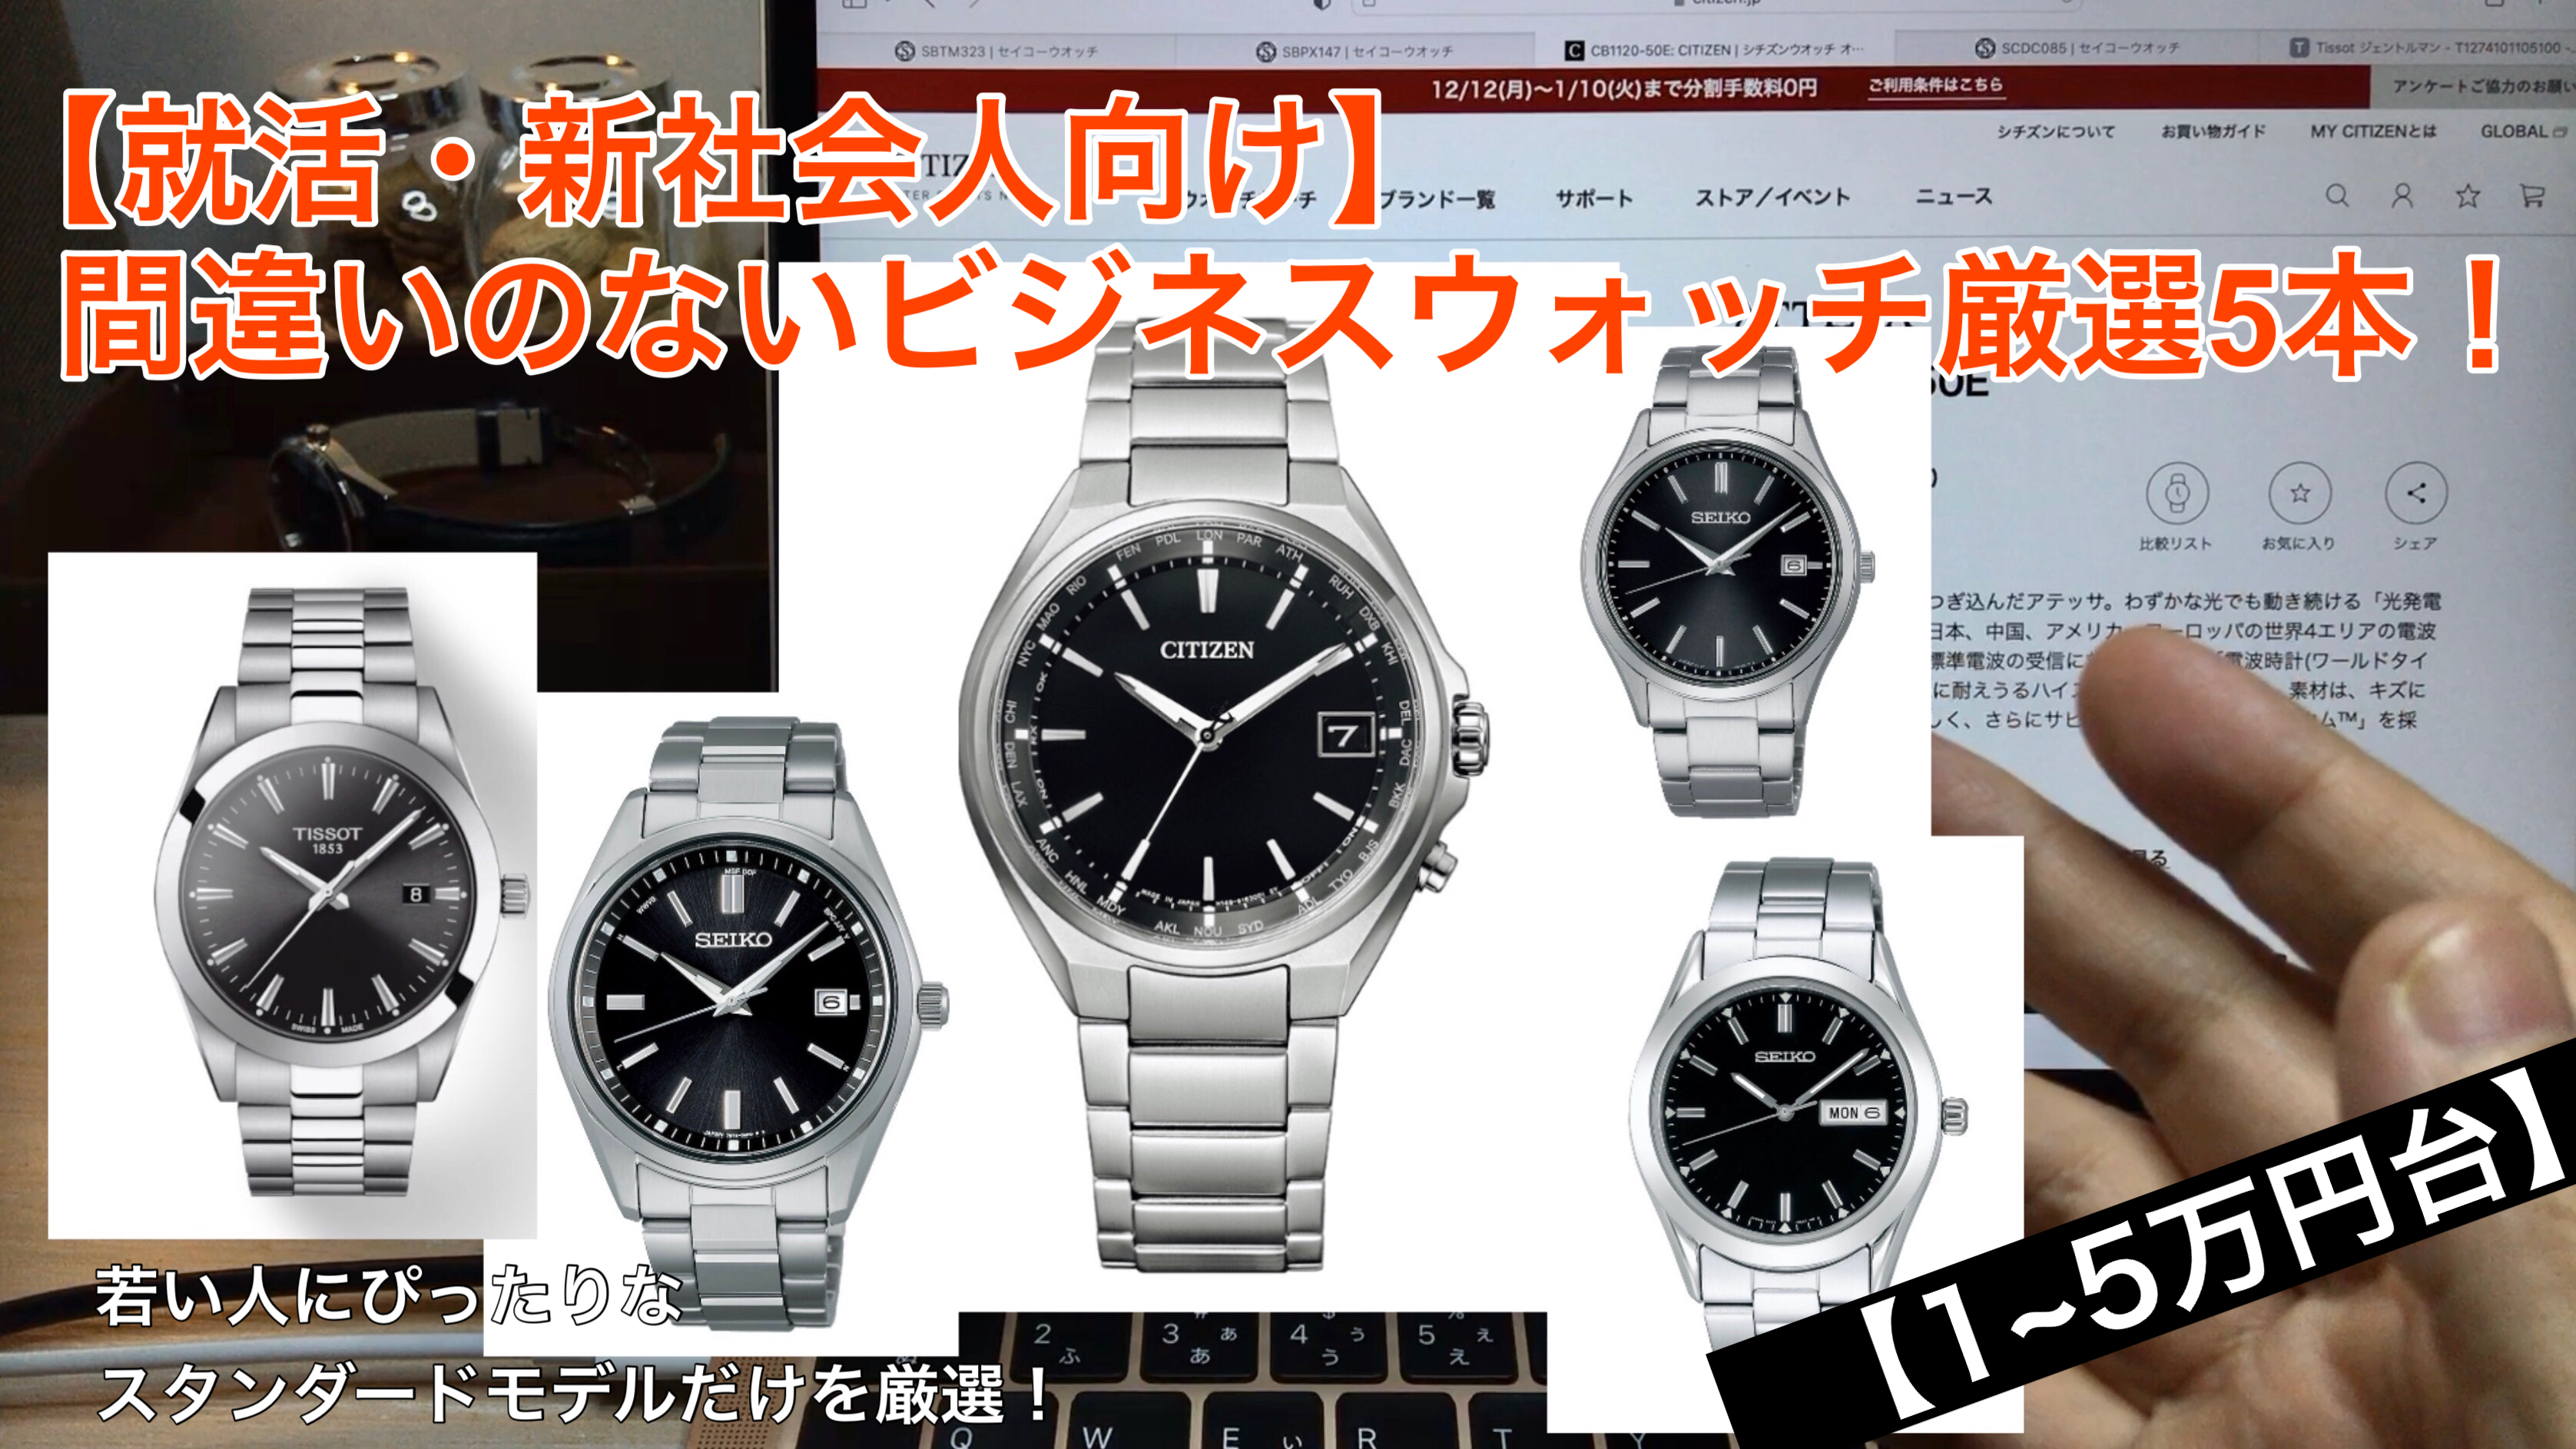 アイキャッチ画像　5万円前後で購入できるビジネス向け腕時計5本